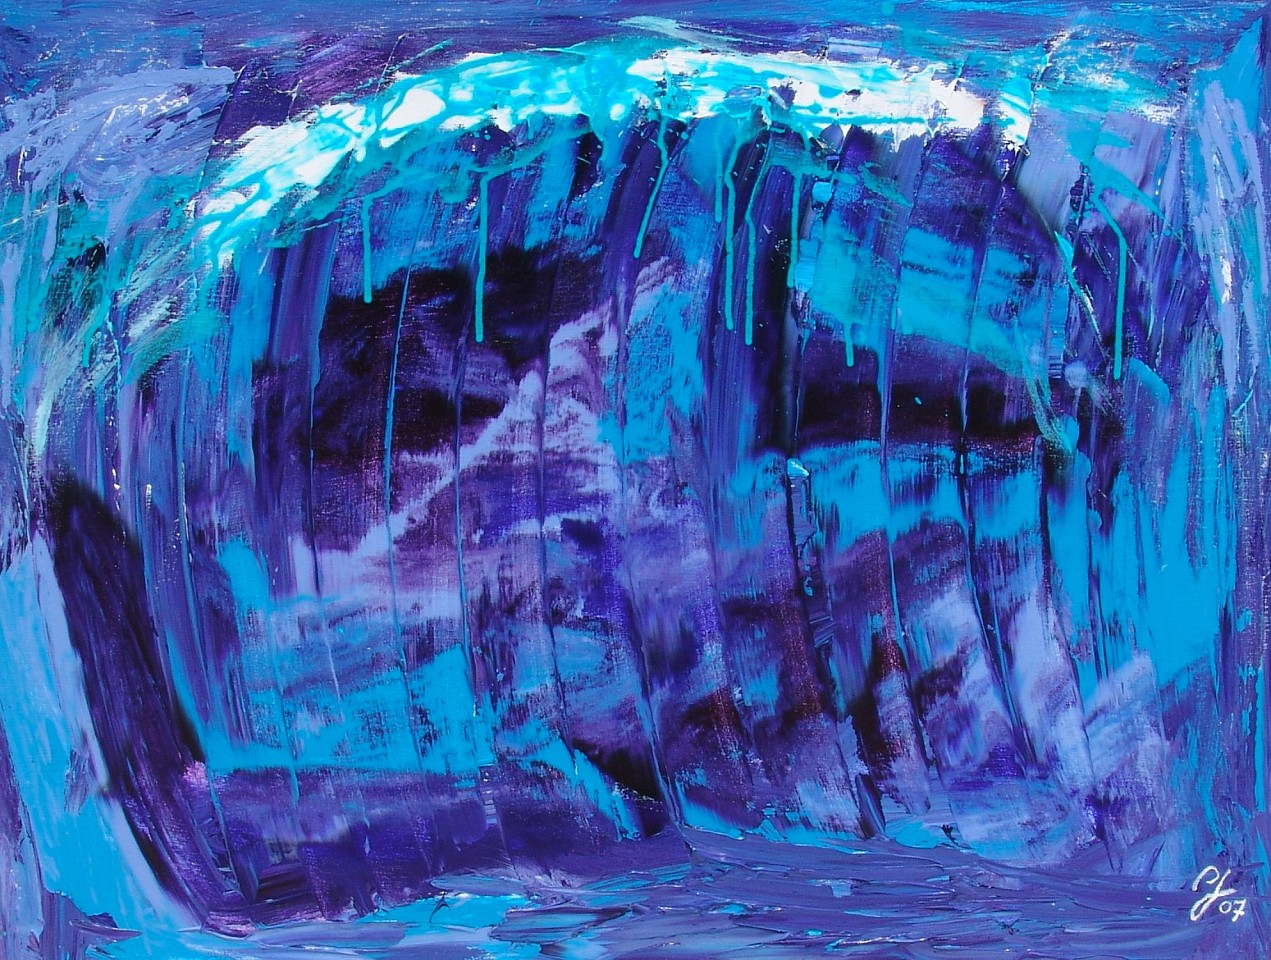 Diego Jacobson, Brain freeze, 2007
Acrylic on Canvas, 30 x 40 in. (76.2 x 101.6 cm)
0961